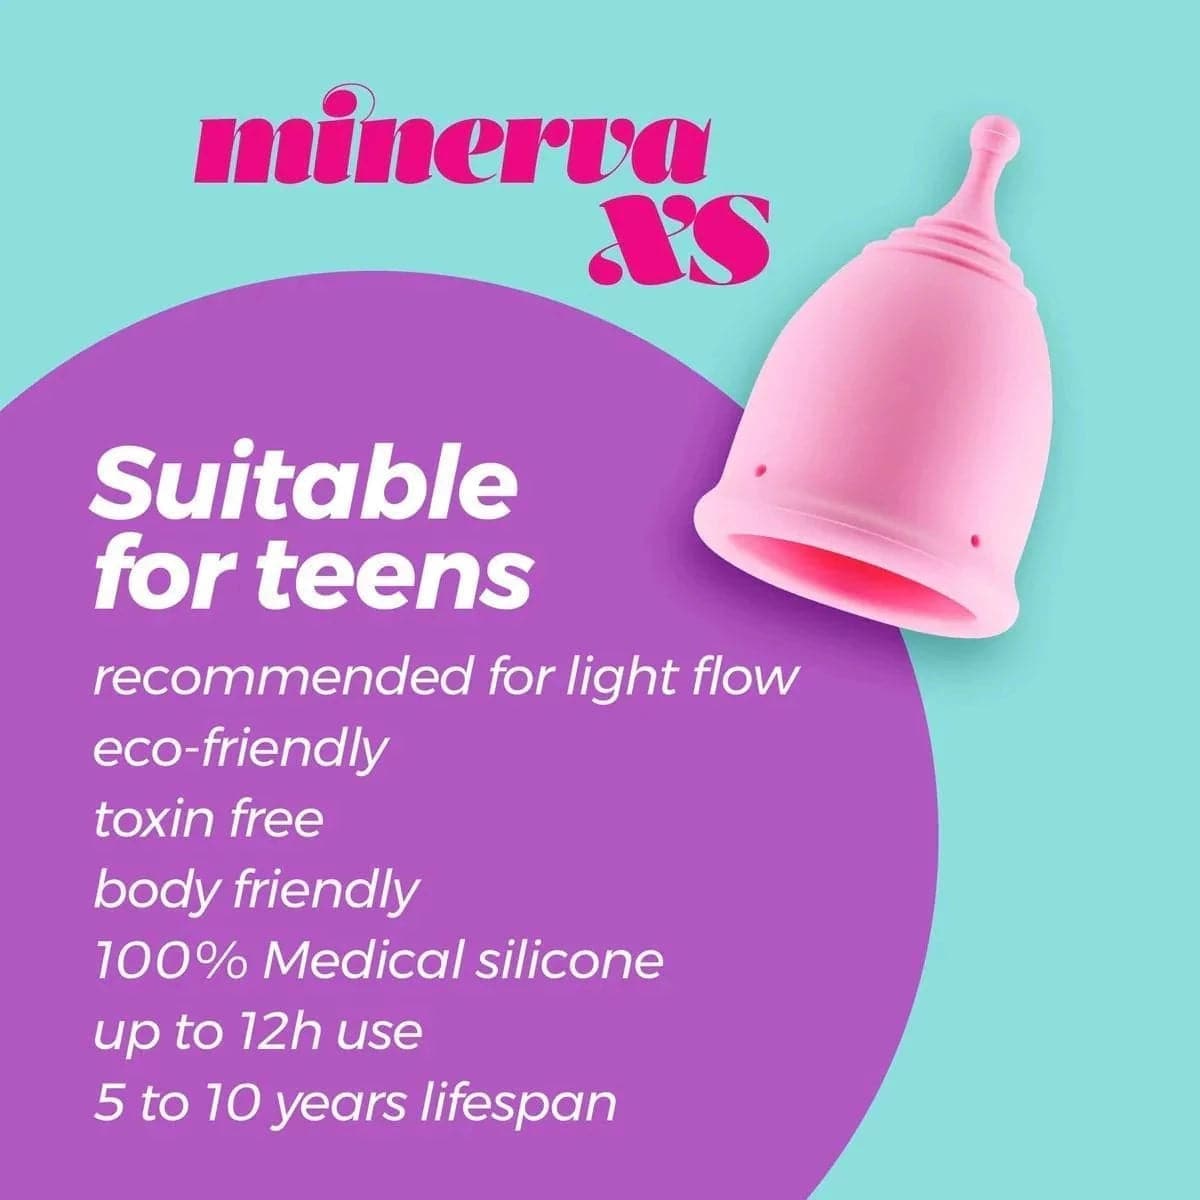 Copo Menstrual Minerva XS 100% Silicone, 18ml, 5.5cm Ø3.8cm